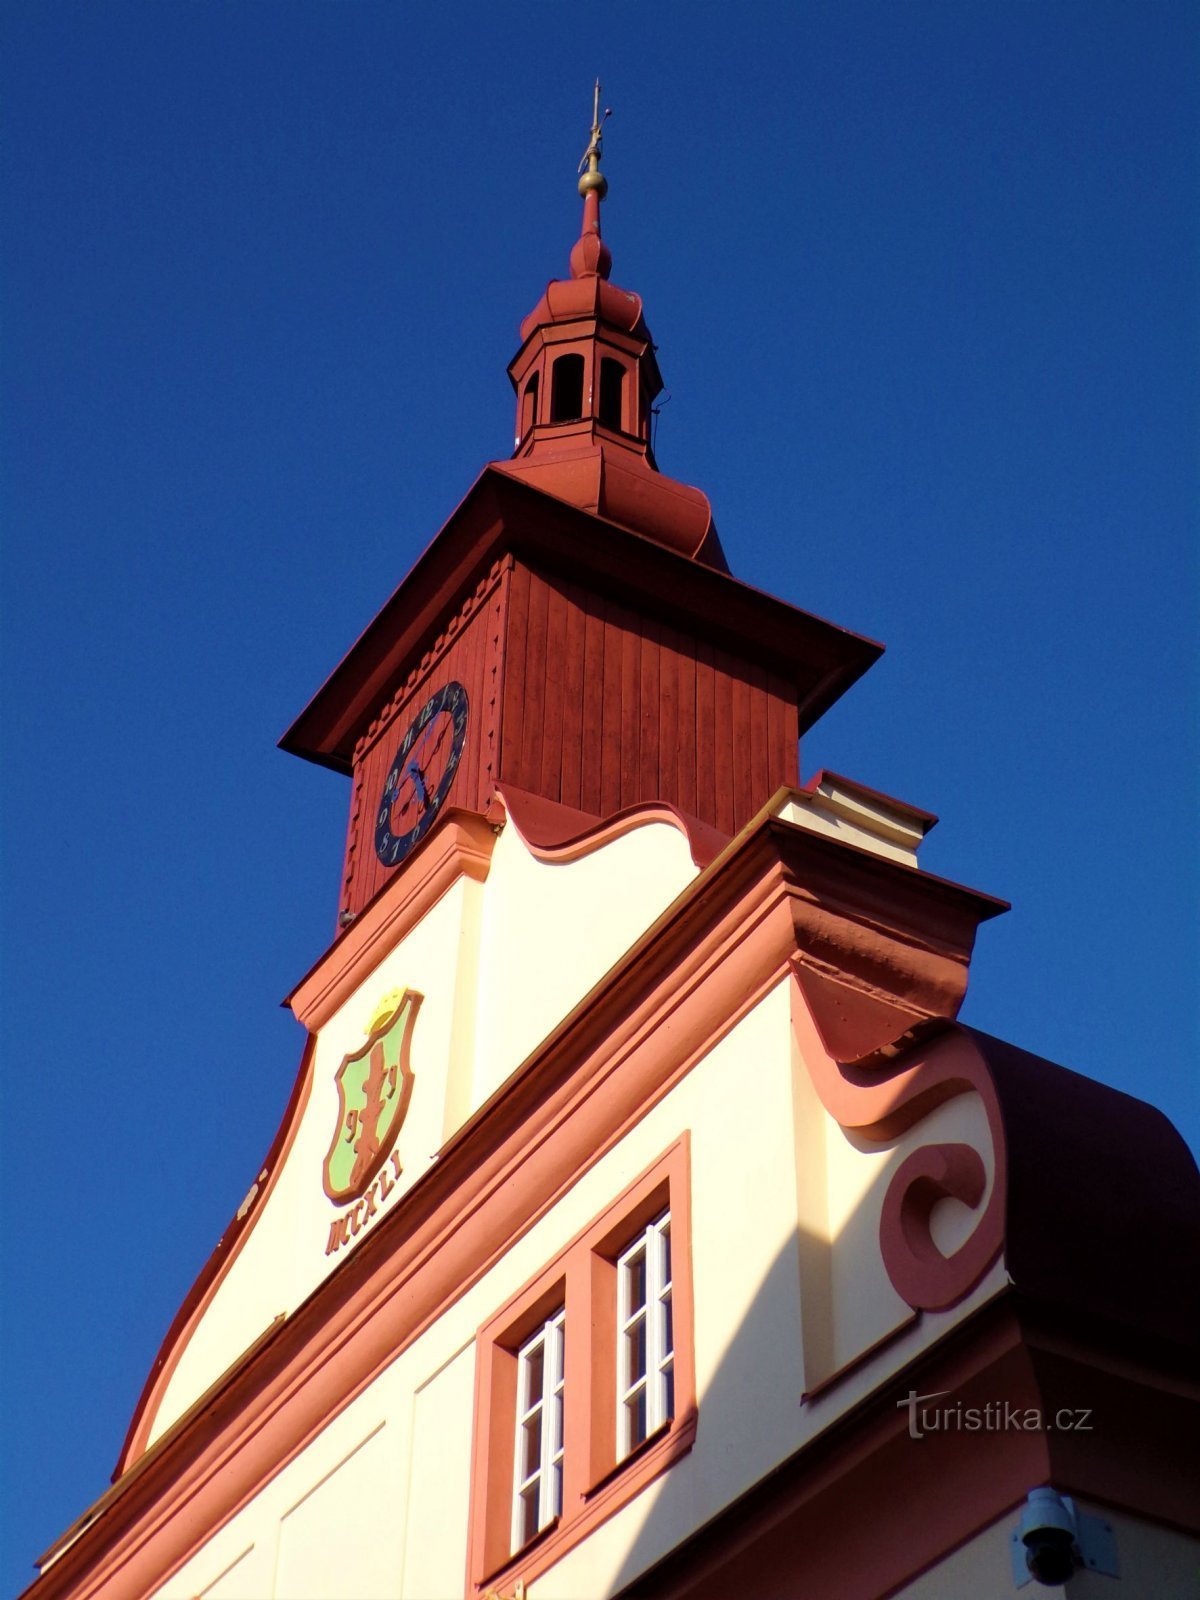 旧市庁舎の塔 No. 30 (Úpice, 8.9.2021/XNUMX/XNUMX)